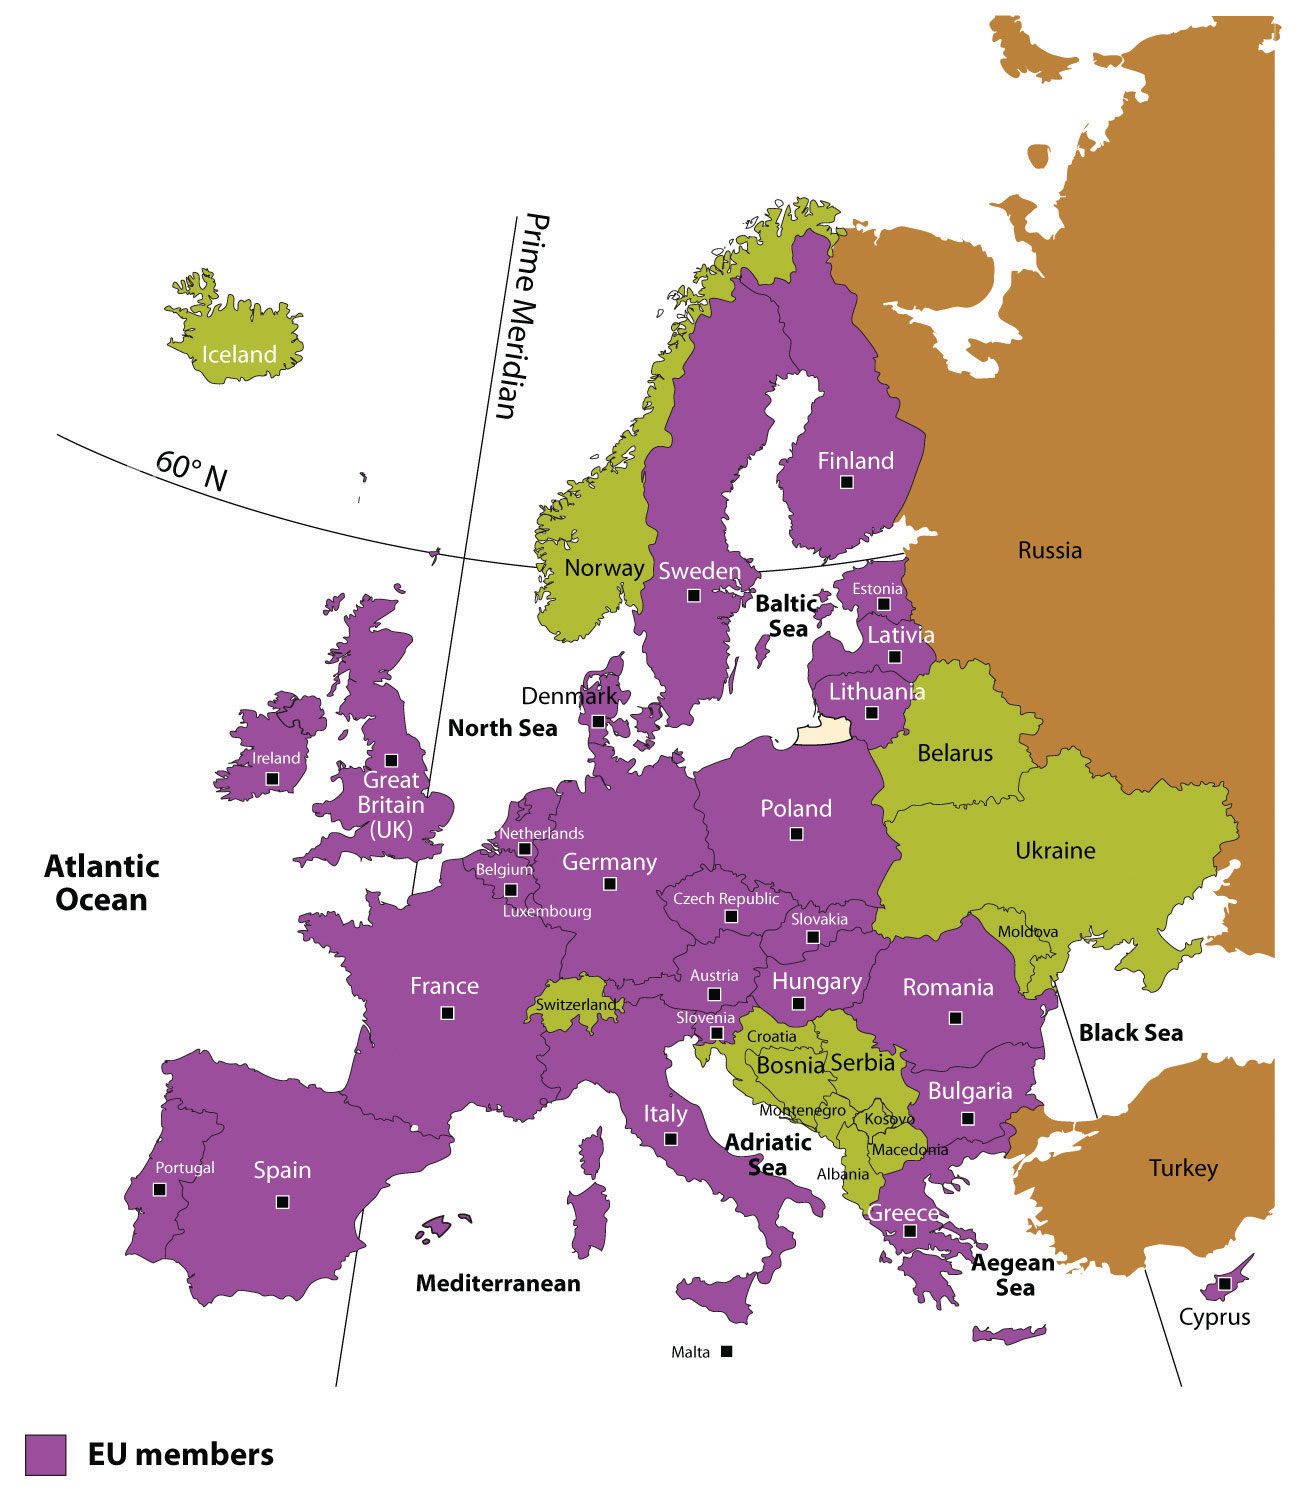 EU Members as of 2010